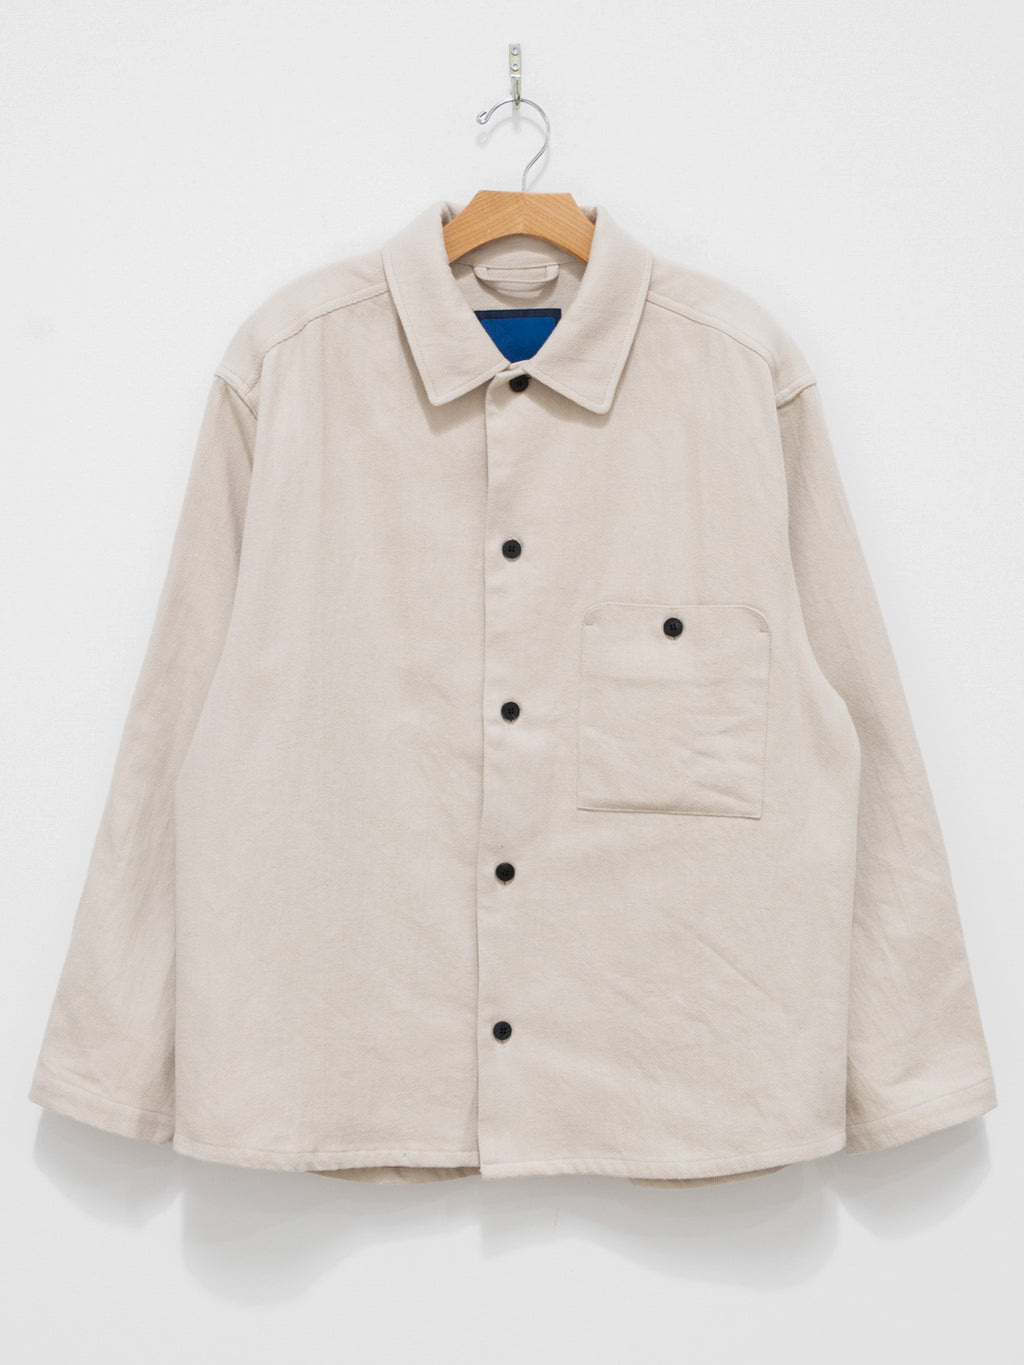 Namu Shop - Document Brushed Cotton French Shirt - Ecru